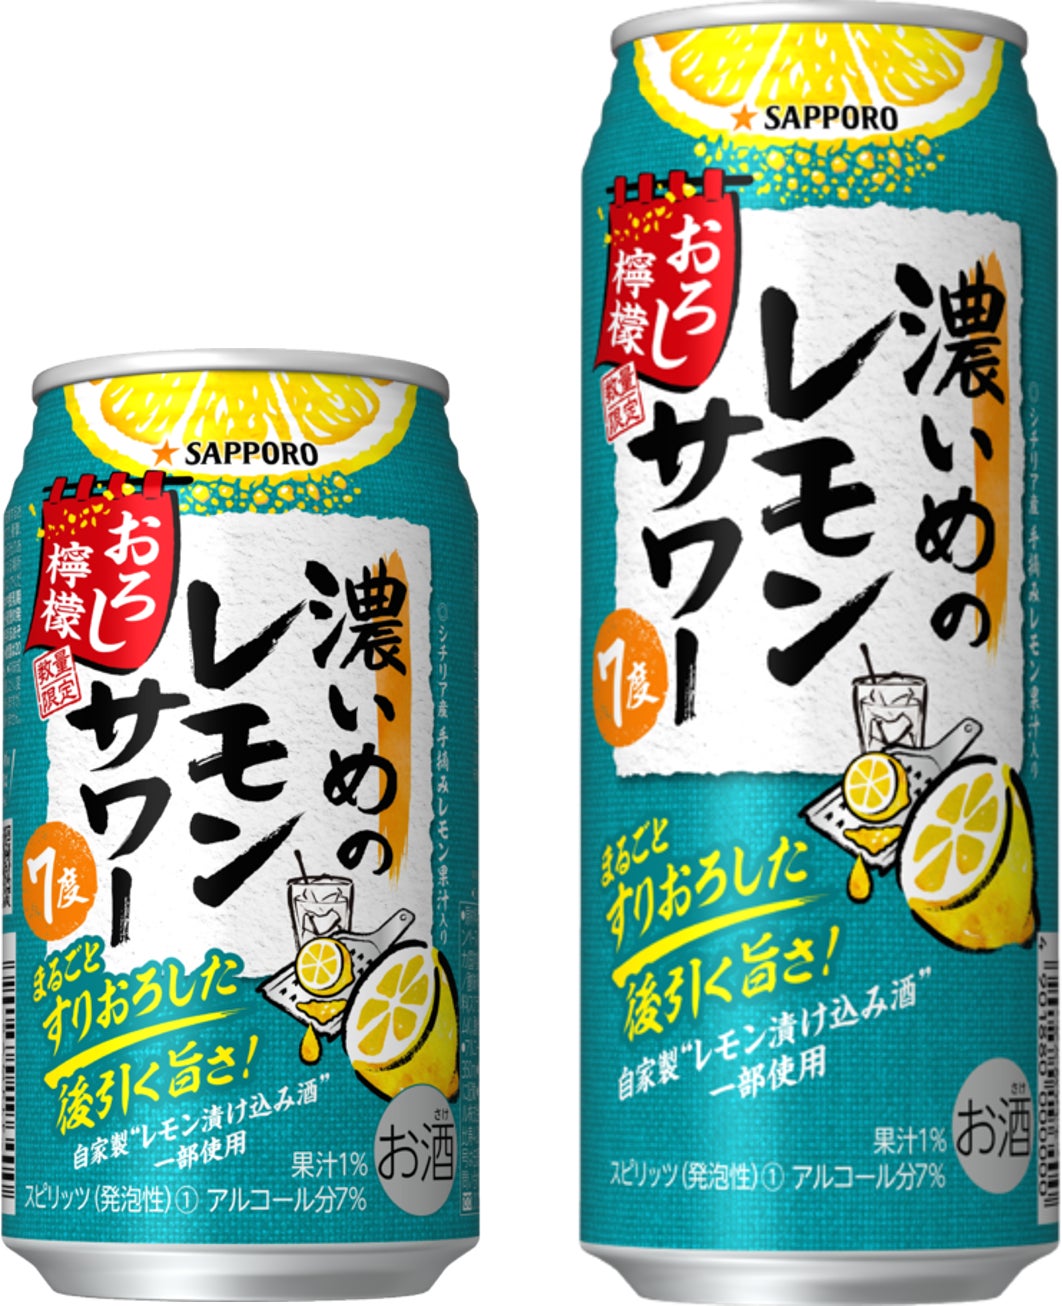 「サッポロ 濃いめのレモンサワー おろし檸檬」数量限定発売